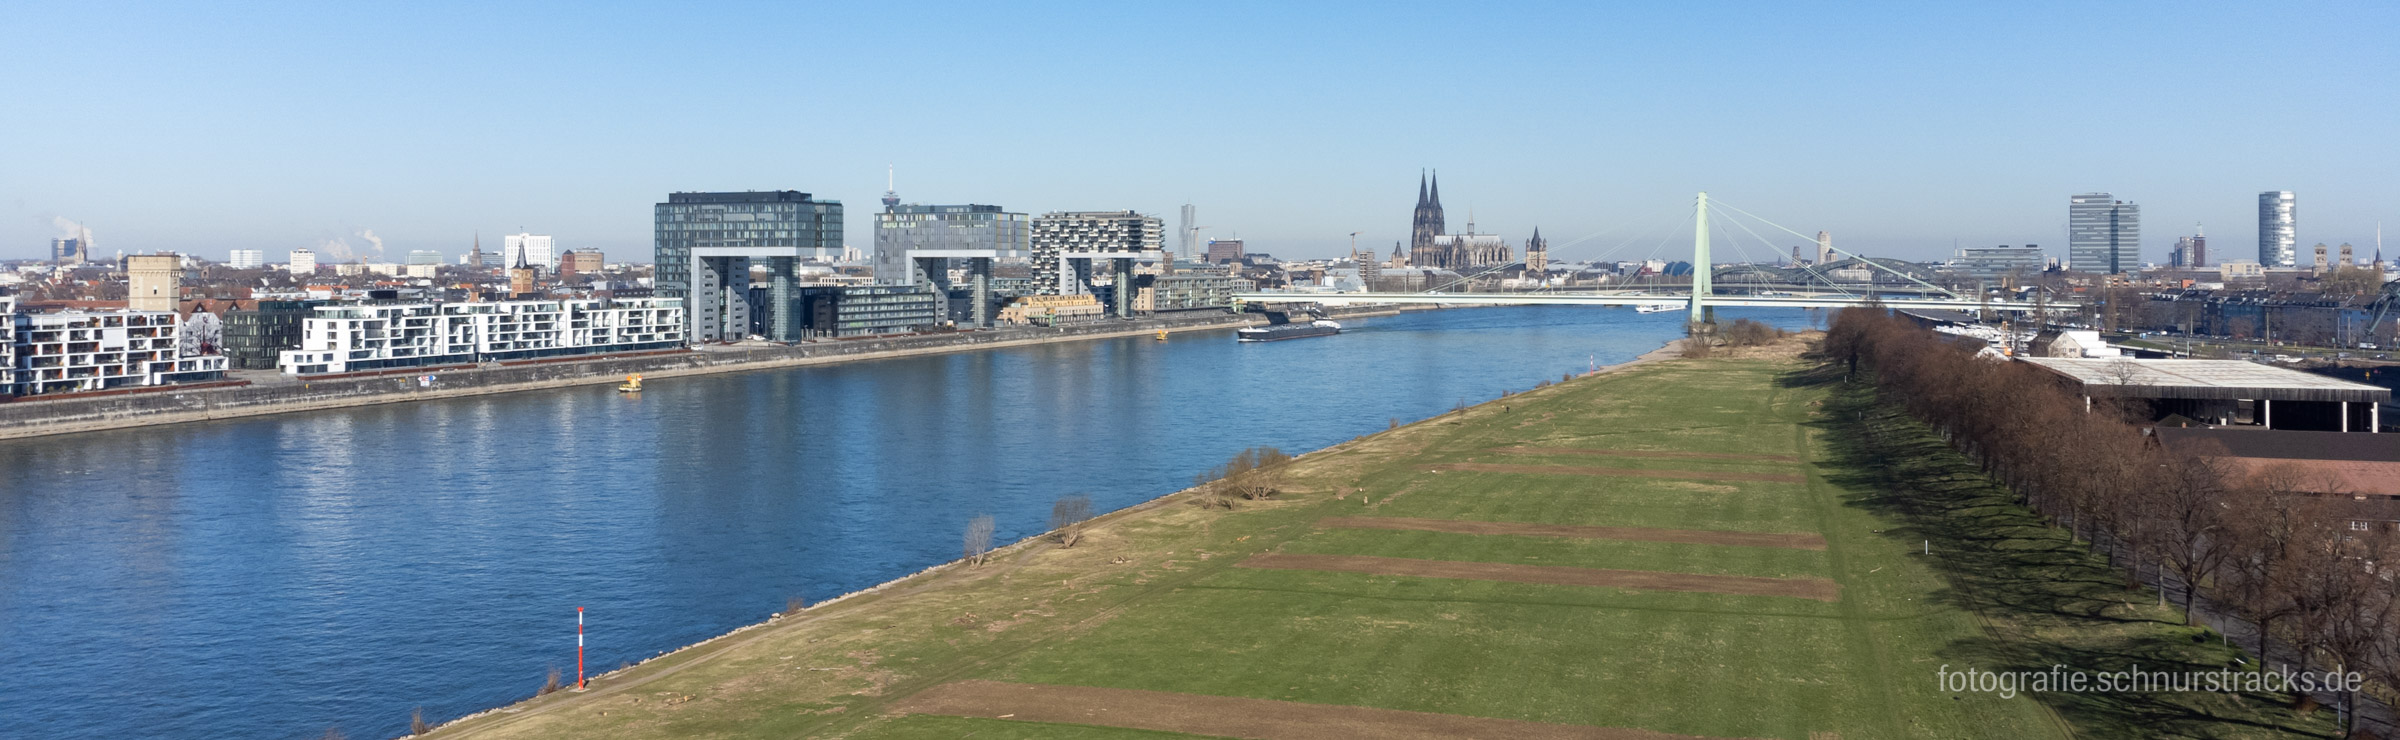 Luftbild Köln über den Poller Wiesen #220318-0008